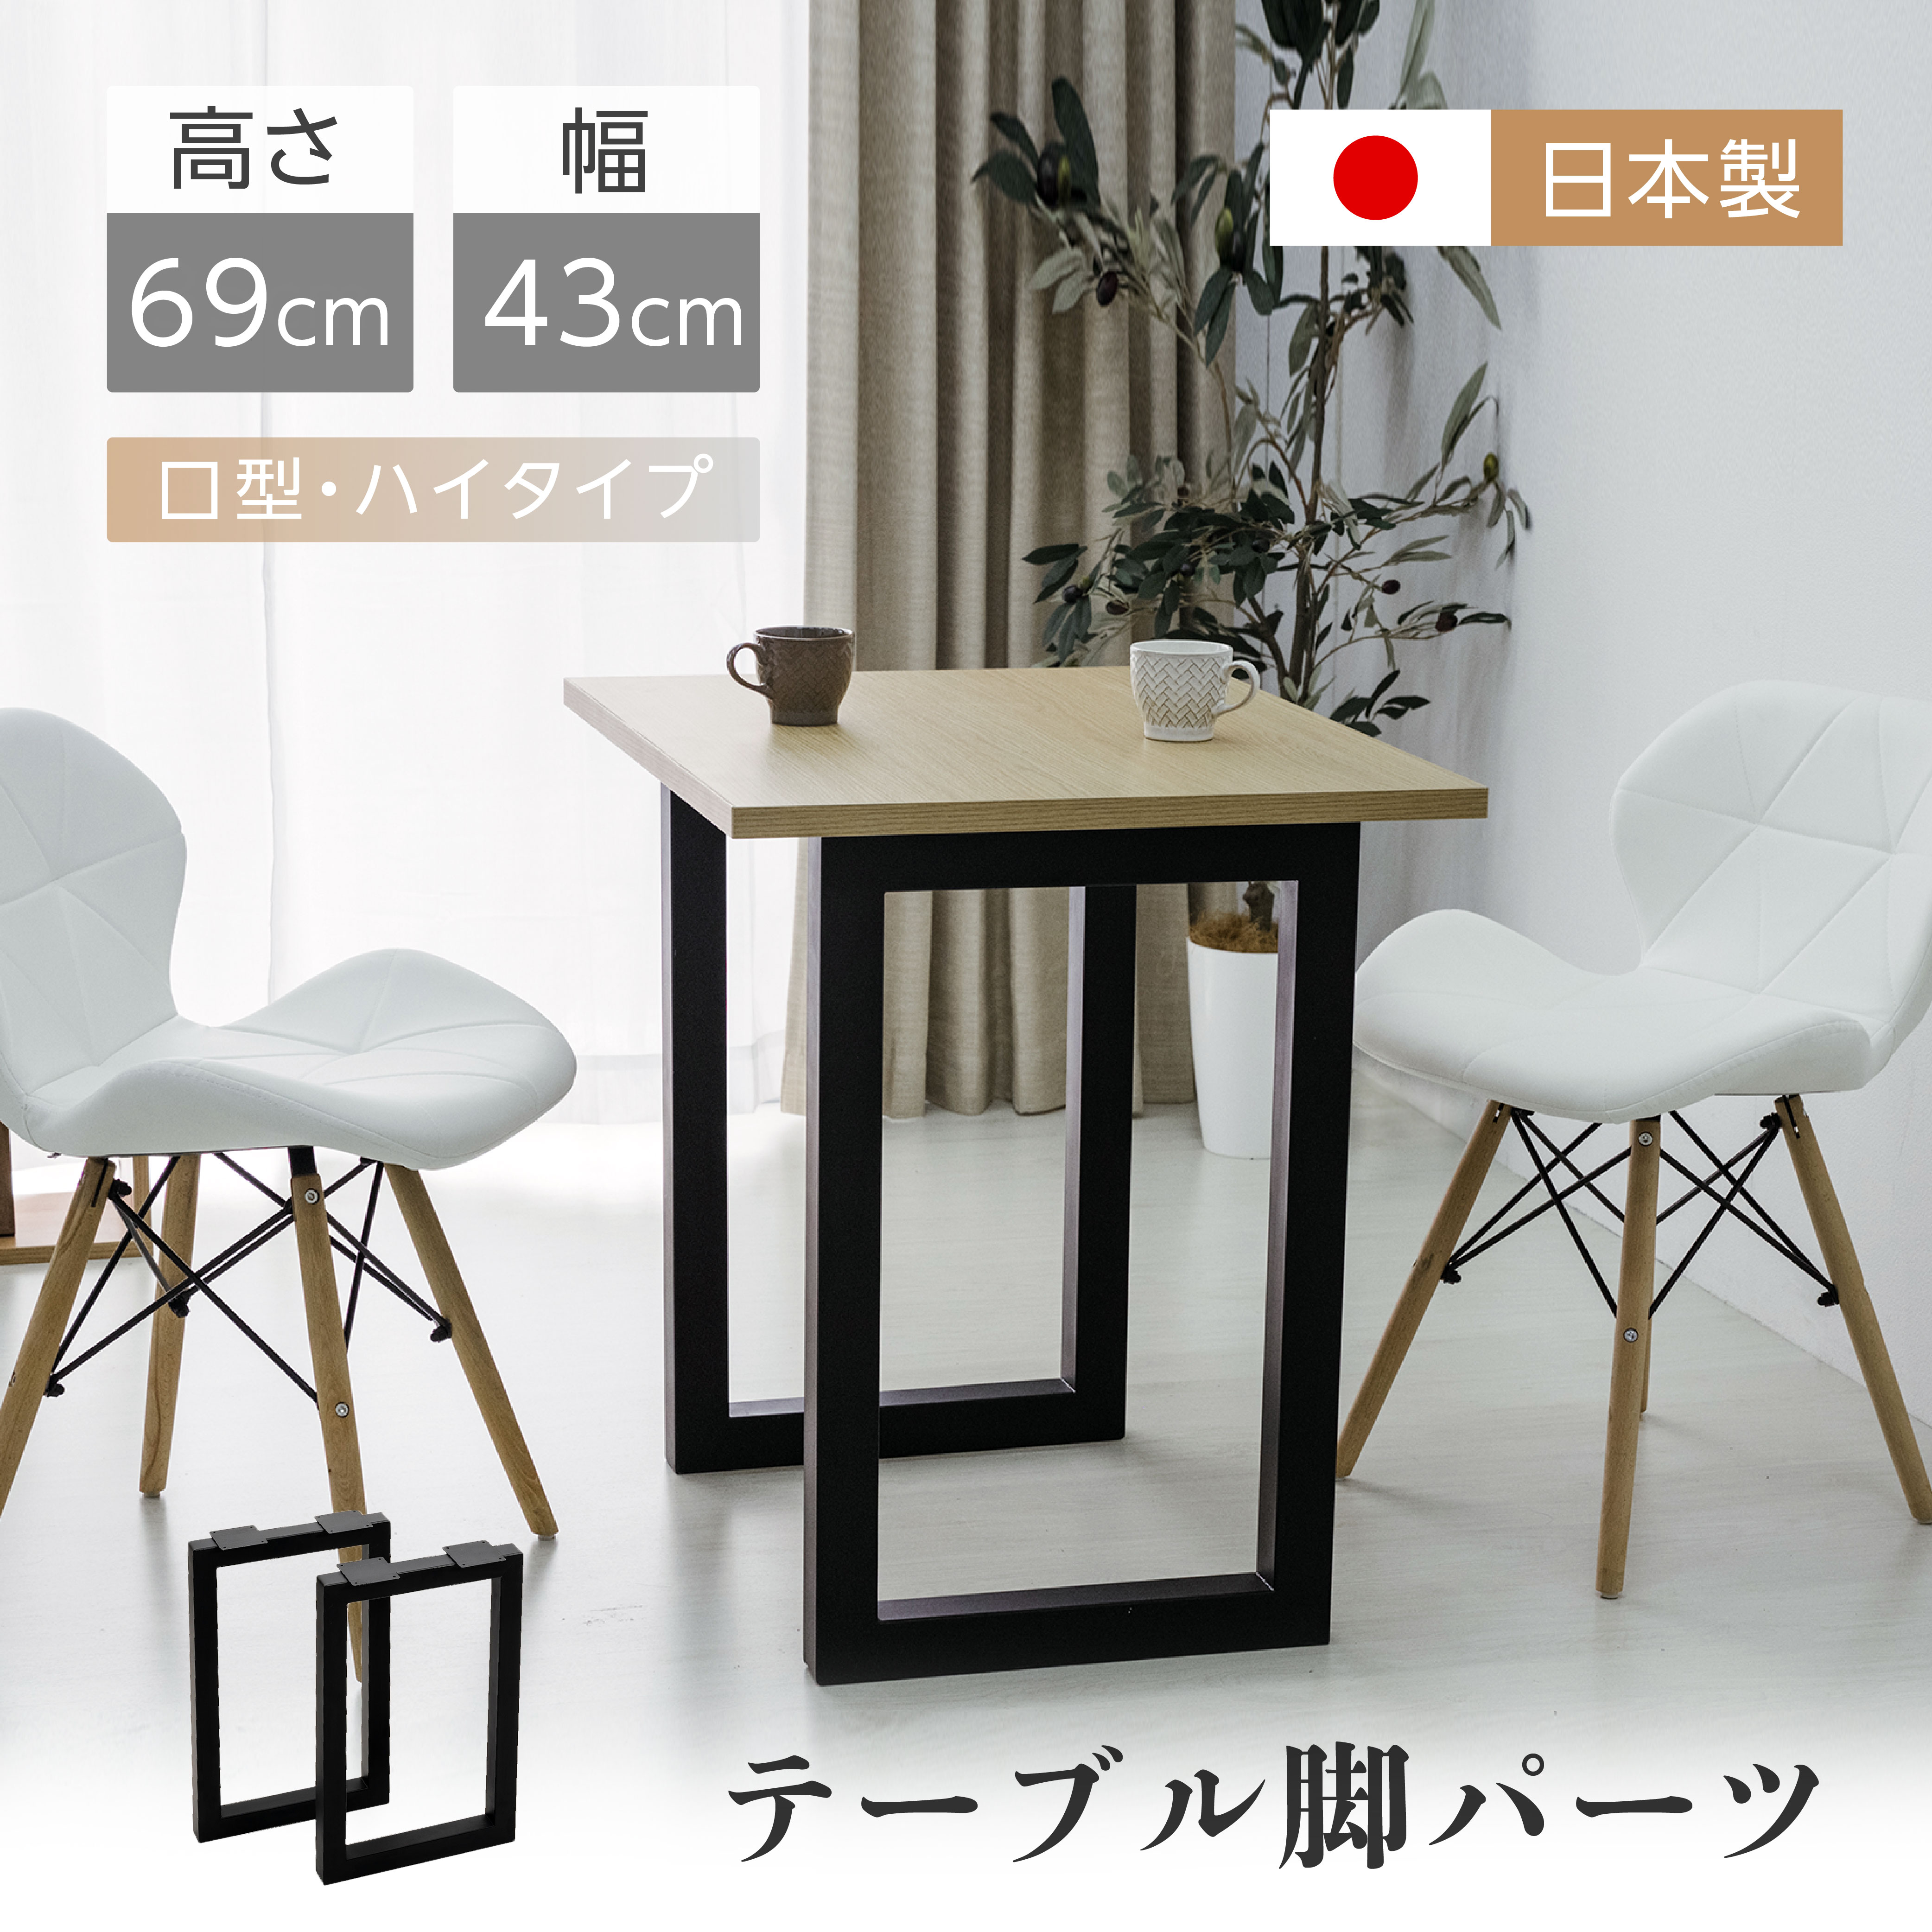 日本製 テーブルキッツ角枠脚 V型高さ69cm 取り替え脚 アイアンレッグ 